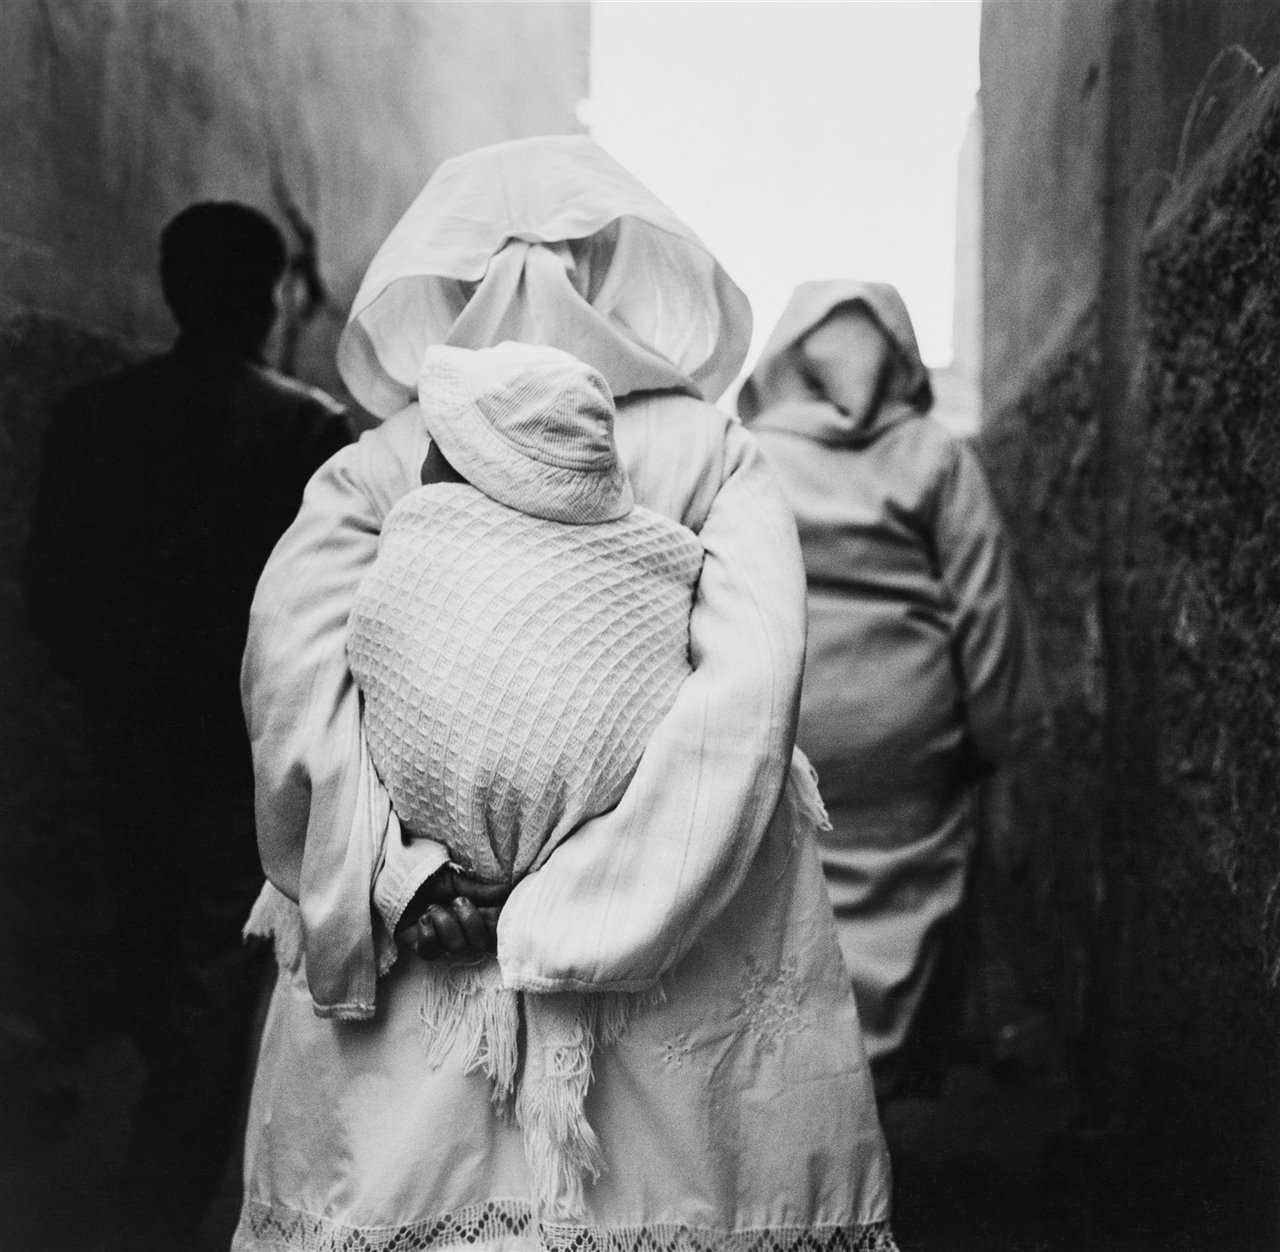 Realizadas en sus viajes de 1987 y 1992, las escenas marroquíes retratadas por el fotógrafo barcelonés Ferran Freixa tienen a las personas como inesperadas protagonistas. © Arxiu Ferran Freixa, VEGAP, Girona, 2022.